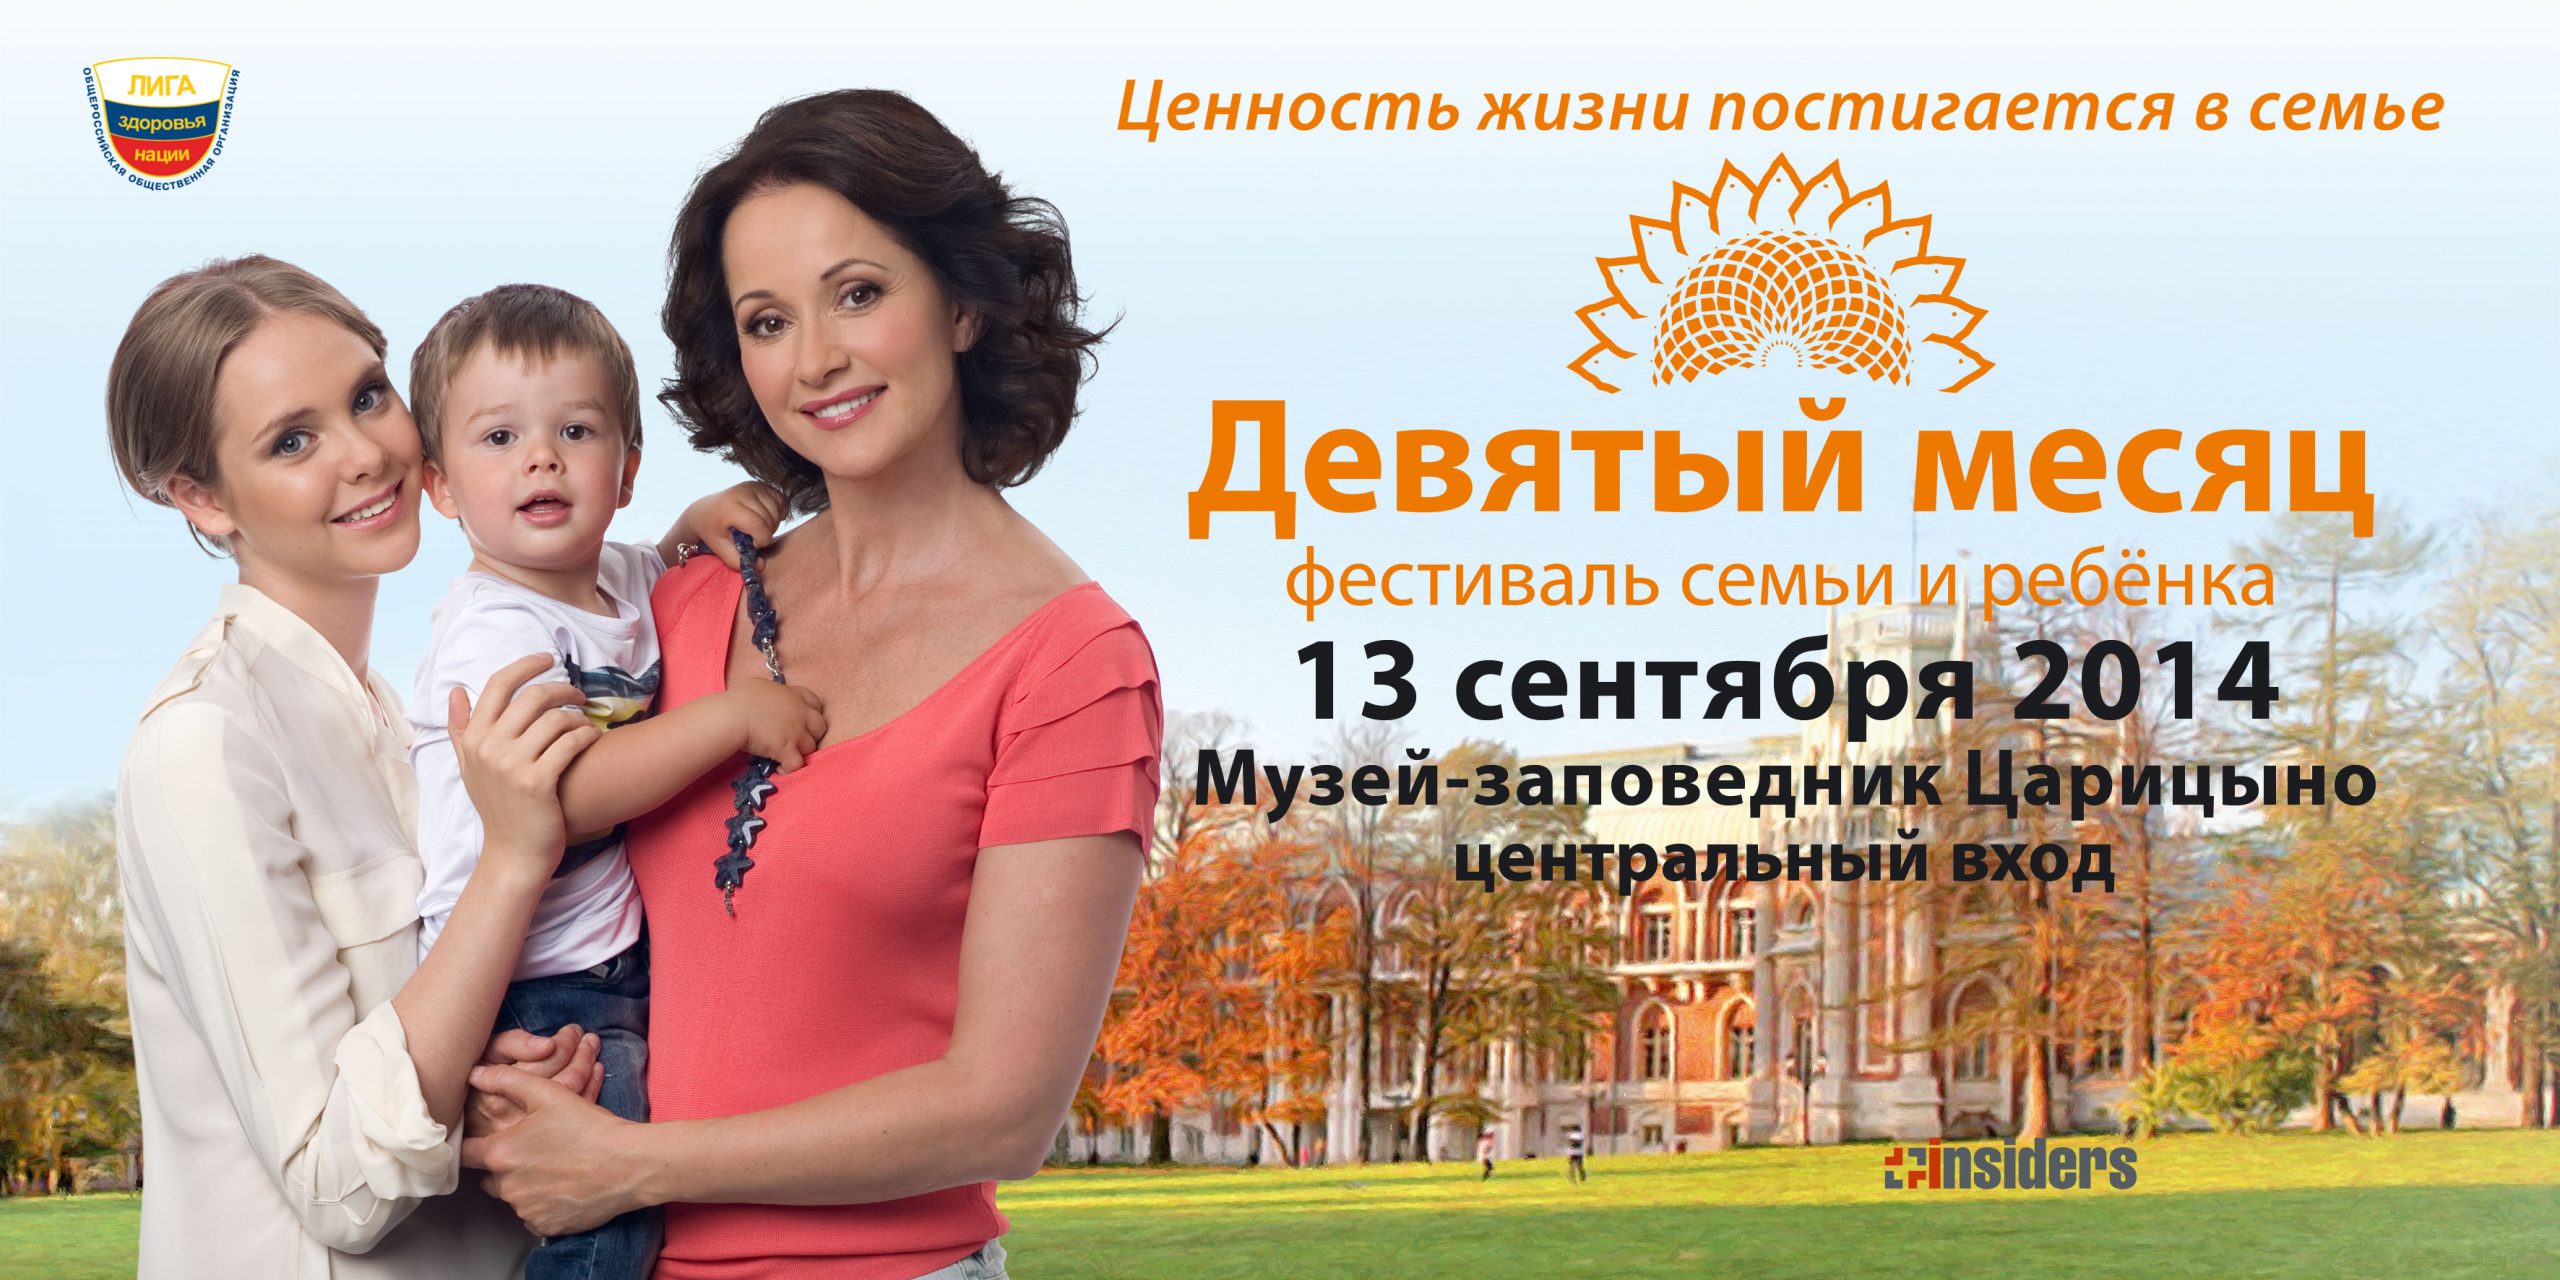 В Царицыно пройдет Фестиваль семьи и ребенка «Девятый месяц»